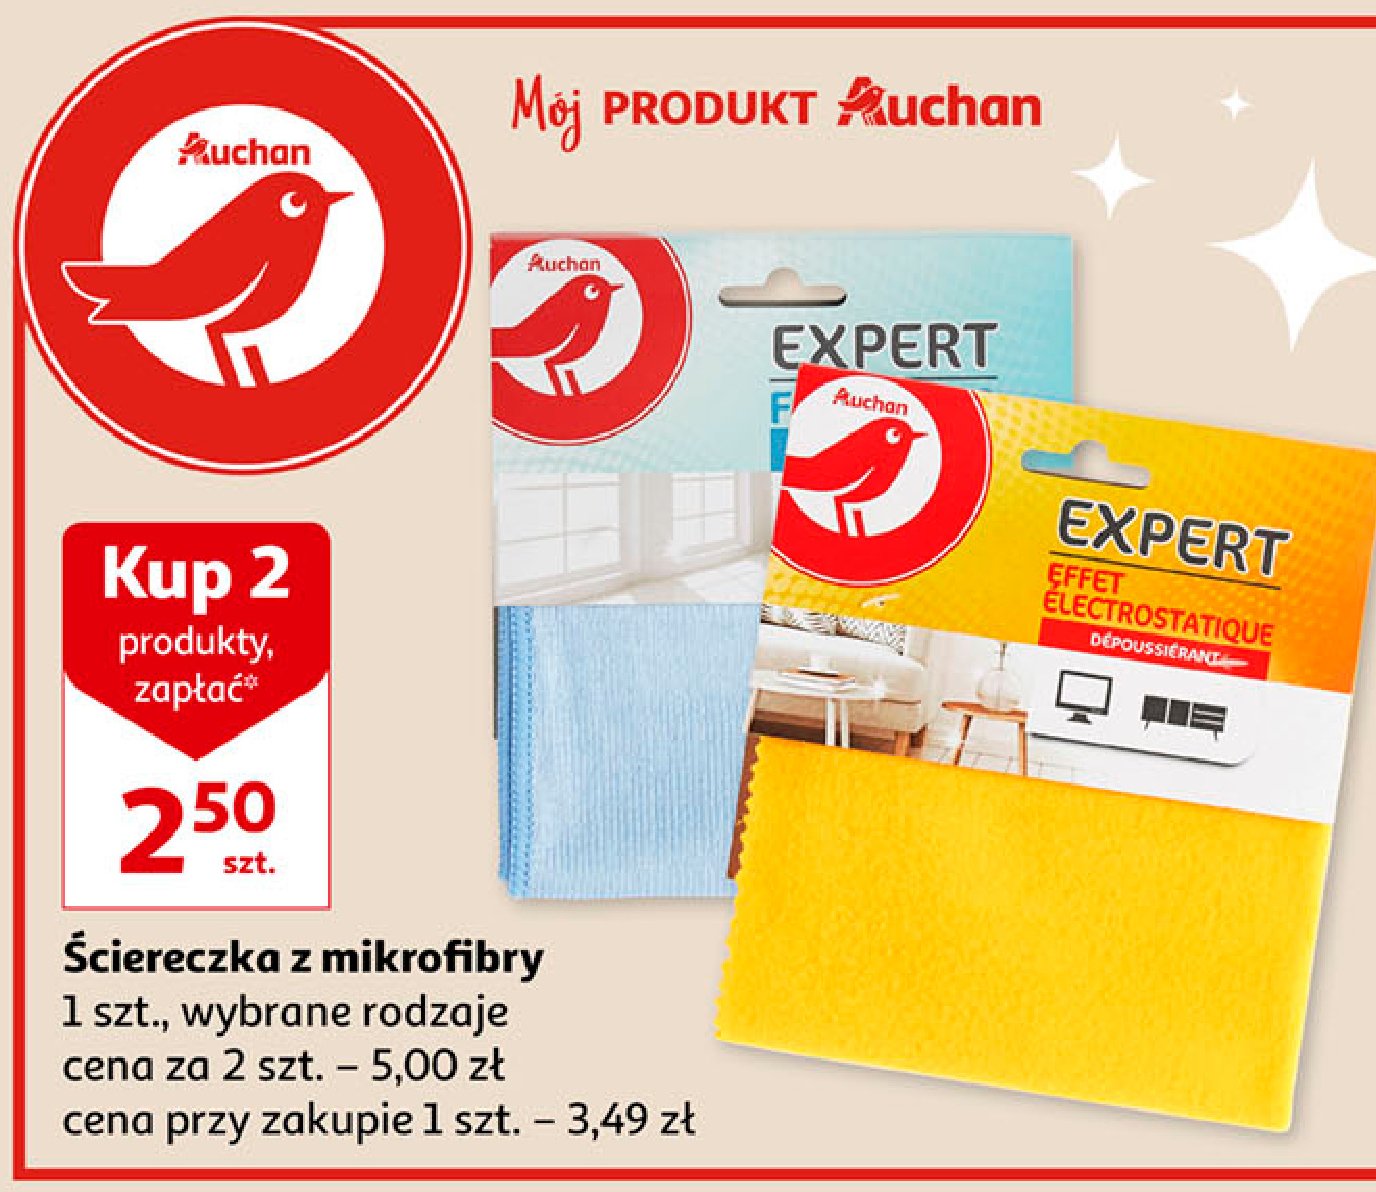 Ściereczka z mikrofibry do szyb i luster Auchan różnorodne (logo czerwone) promocja